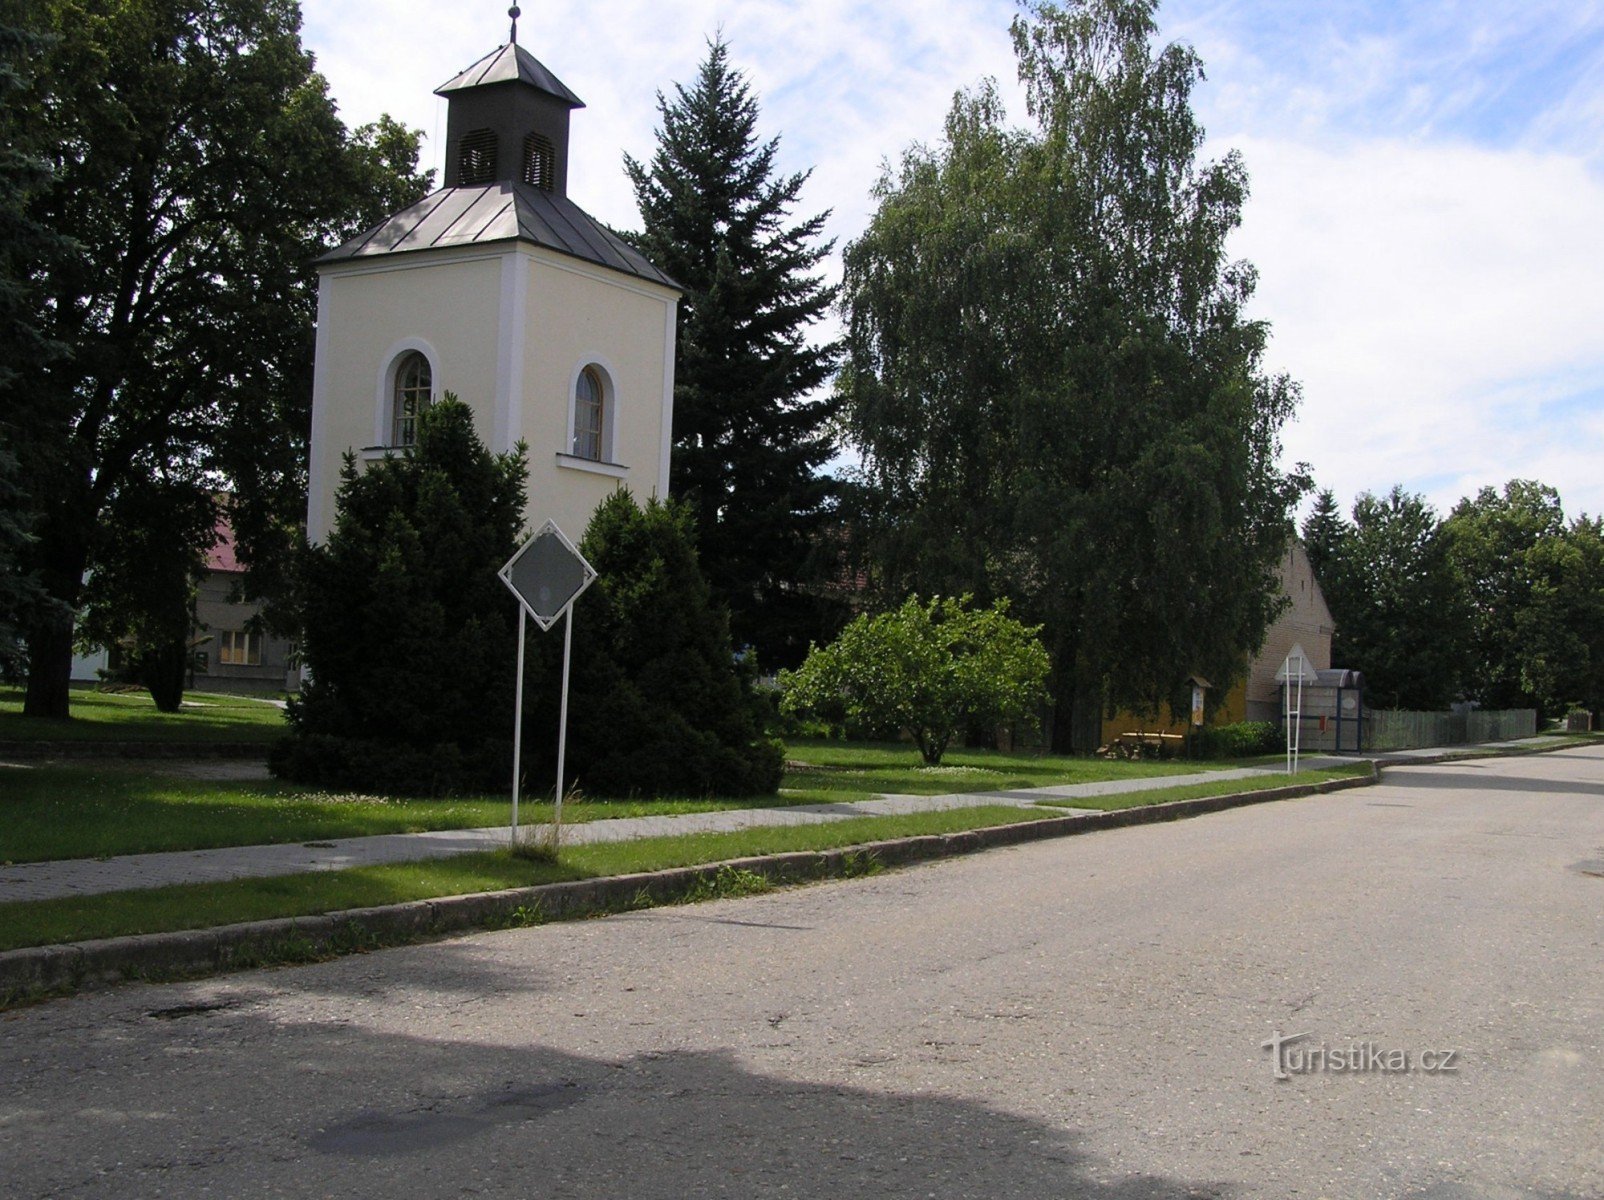 kapel in het dorp (juli 2007)